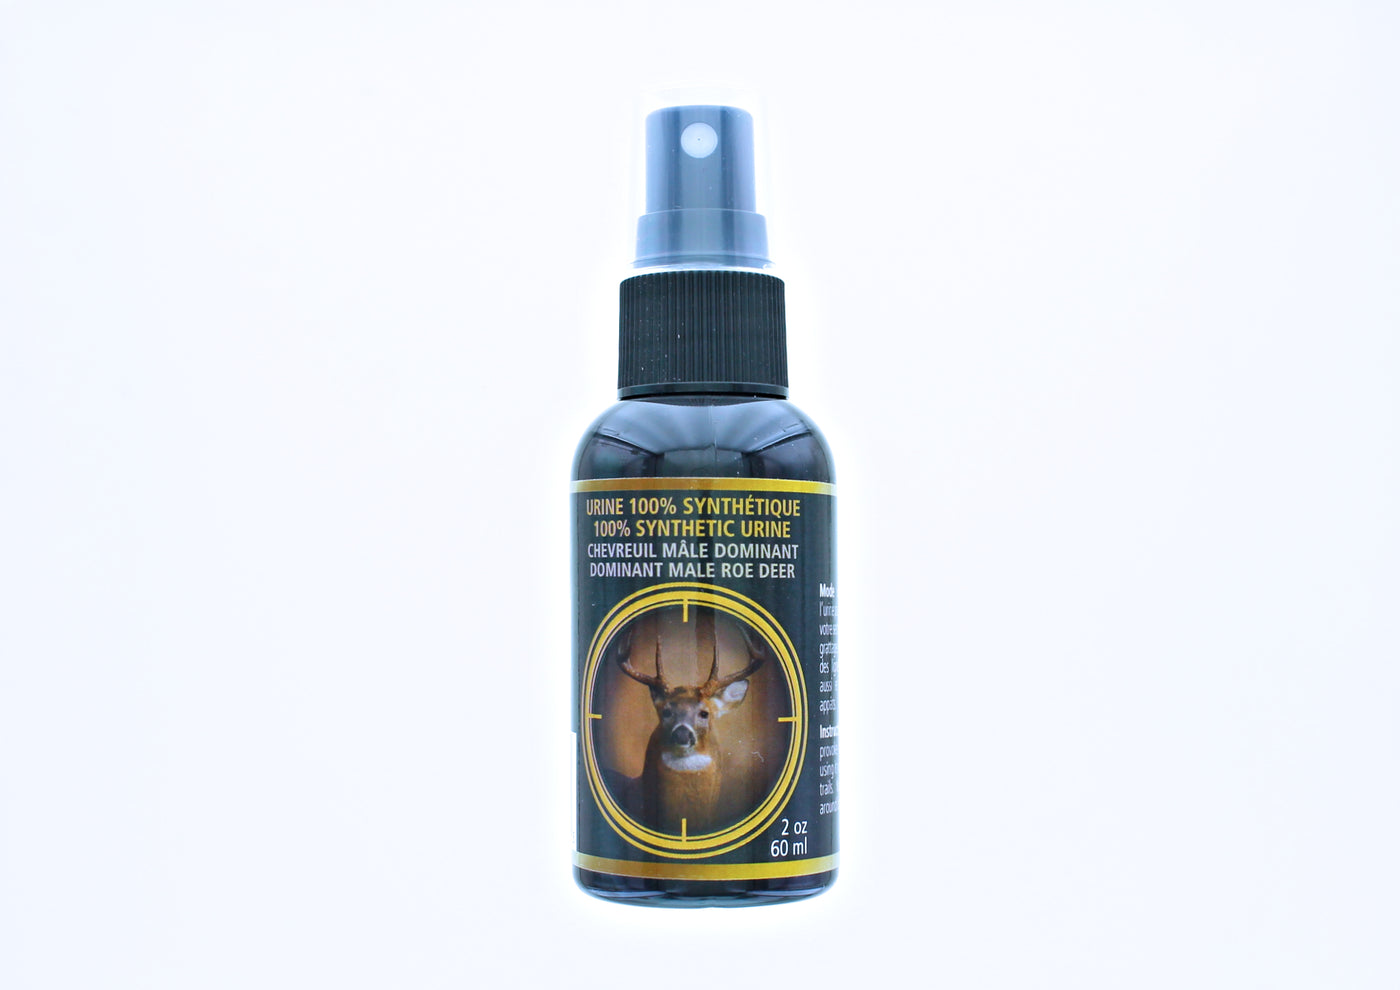 Urine synthétique chevreuil mâle dominant - Meunerie Soucy